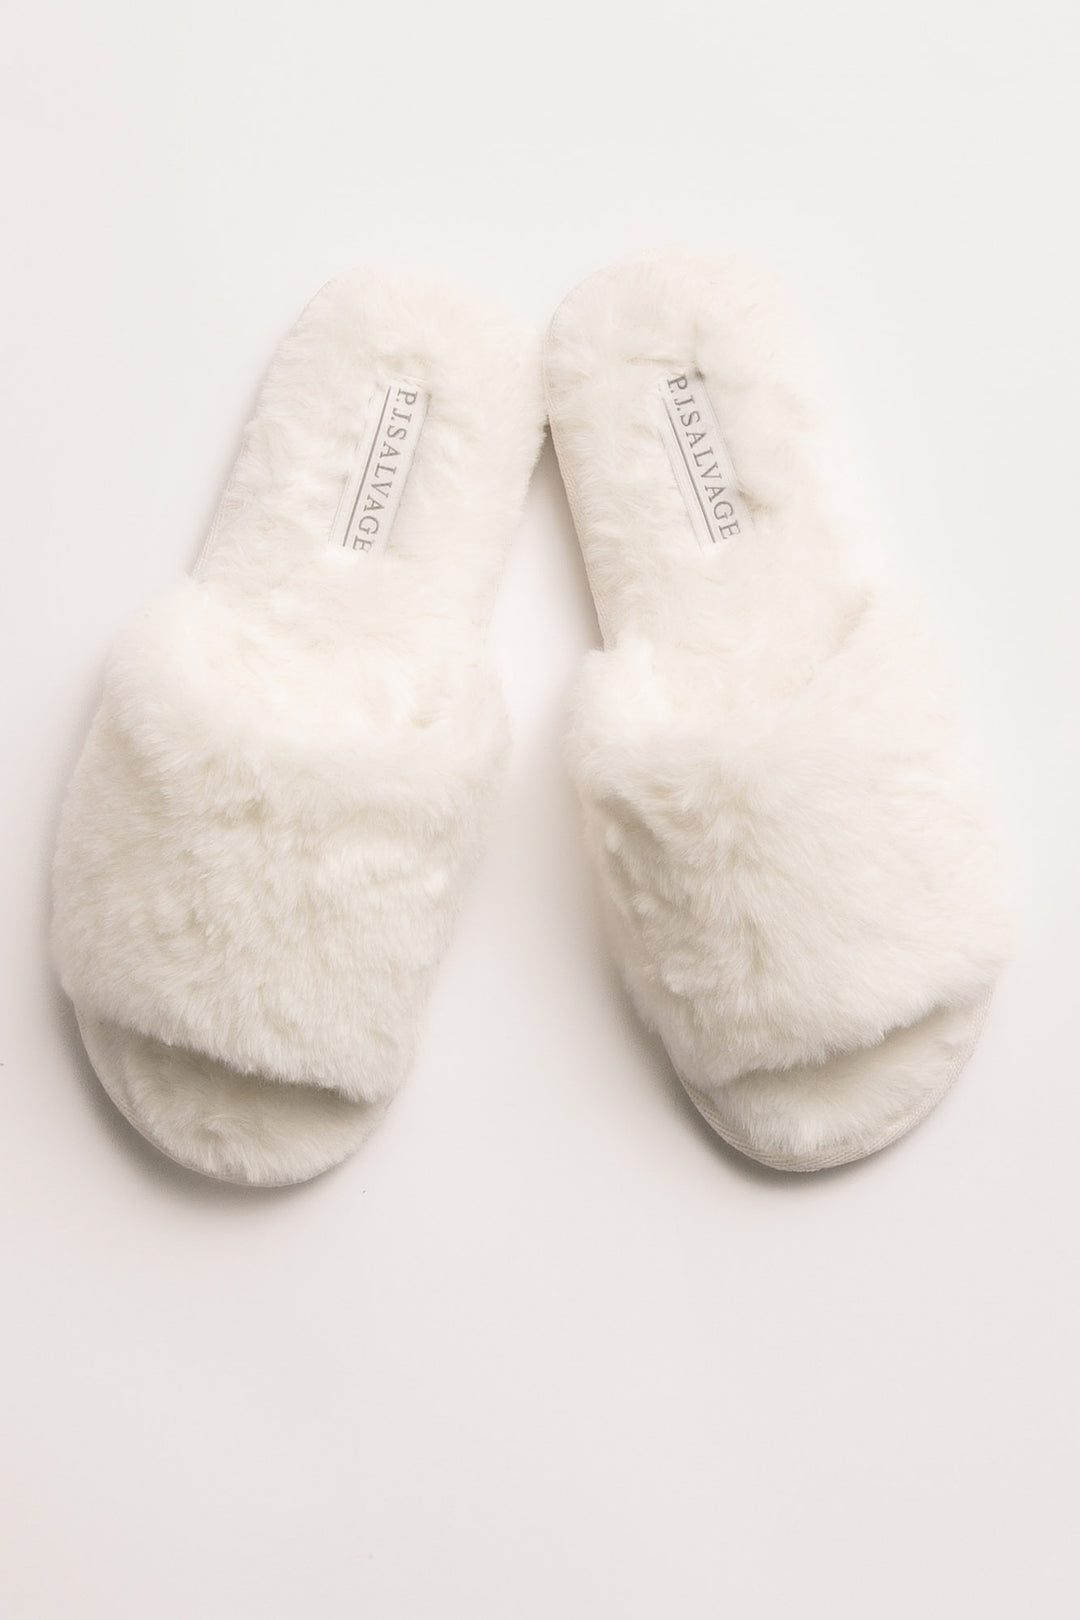 Faux fur slipper in pale grey & ivory leopard print. Open toe & molded outsole. (7231876857956)